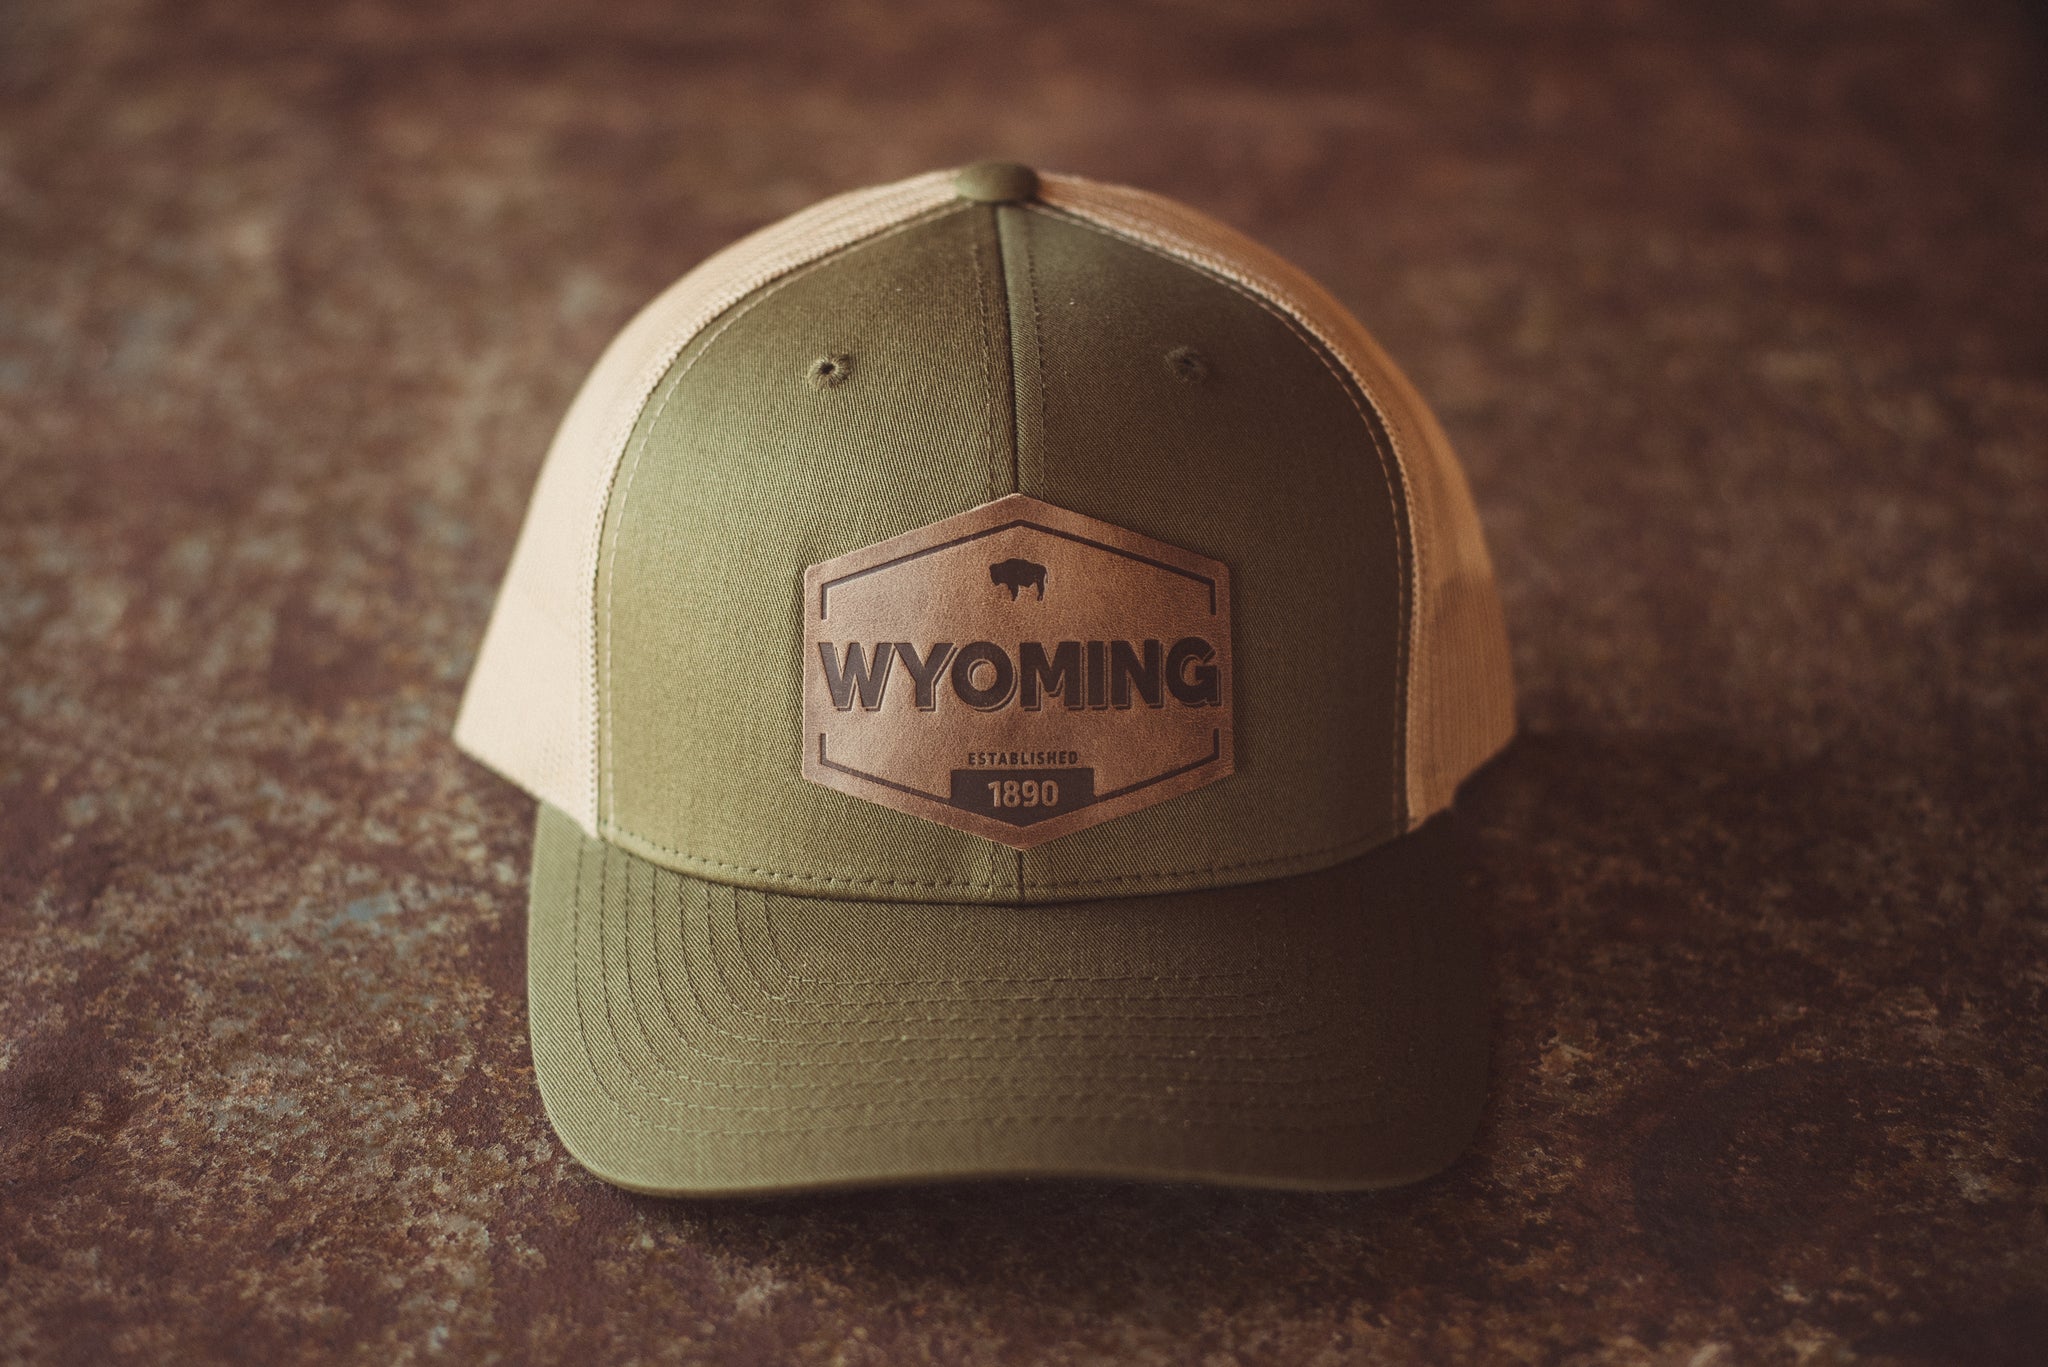 Wyoming Established Hat